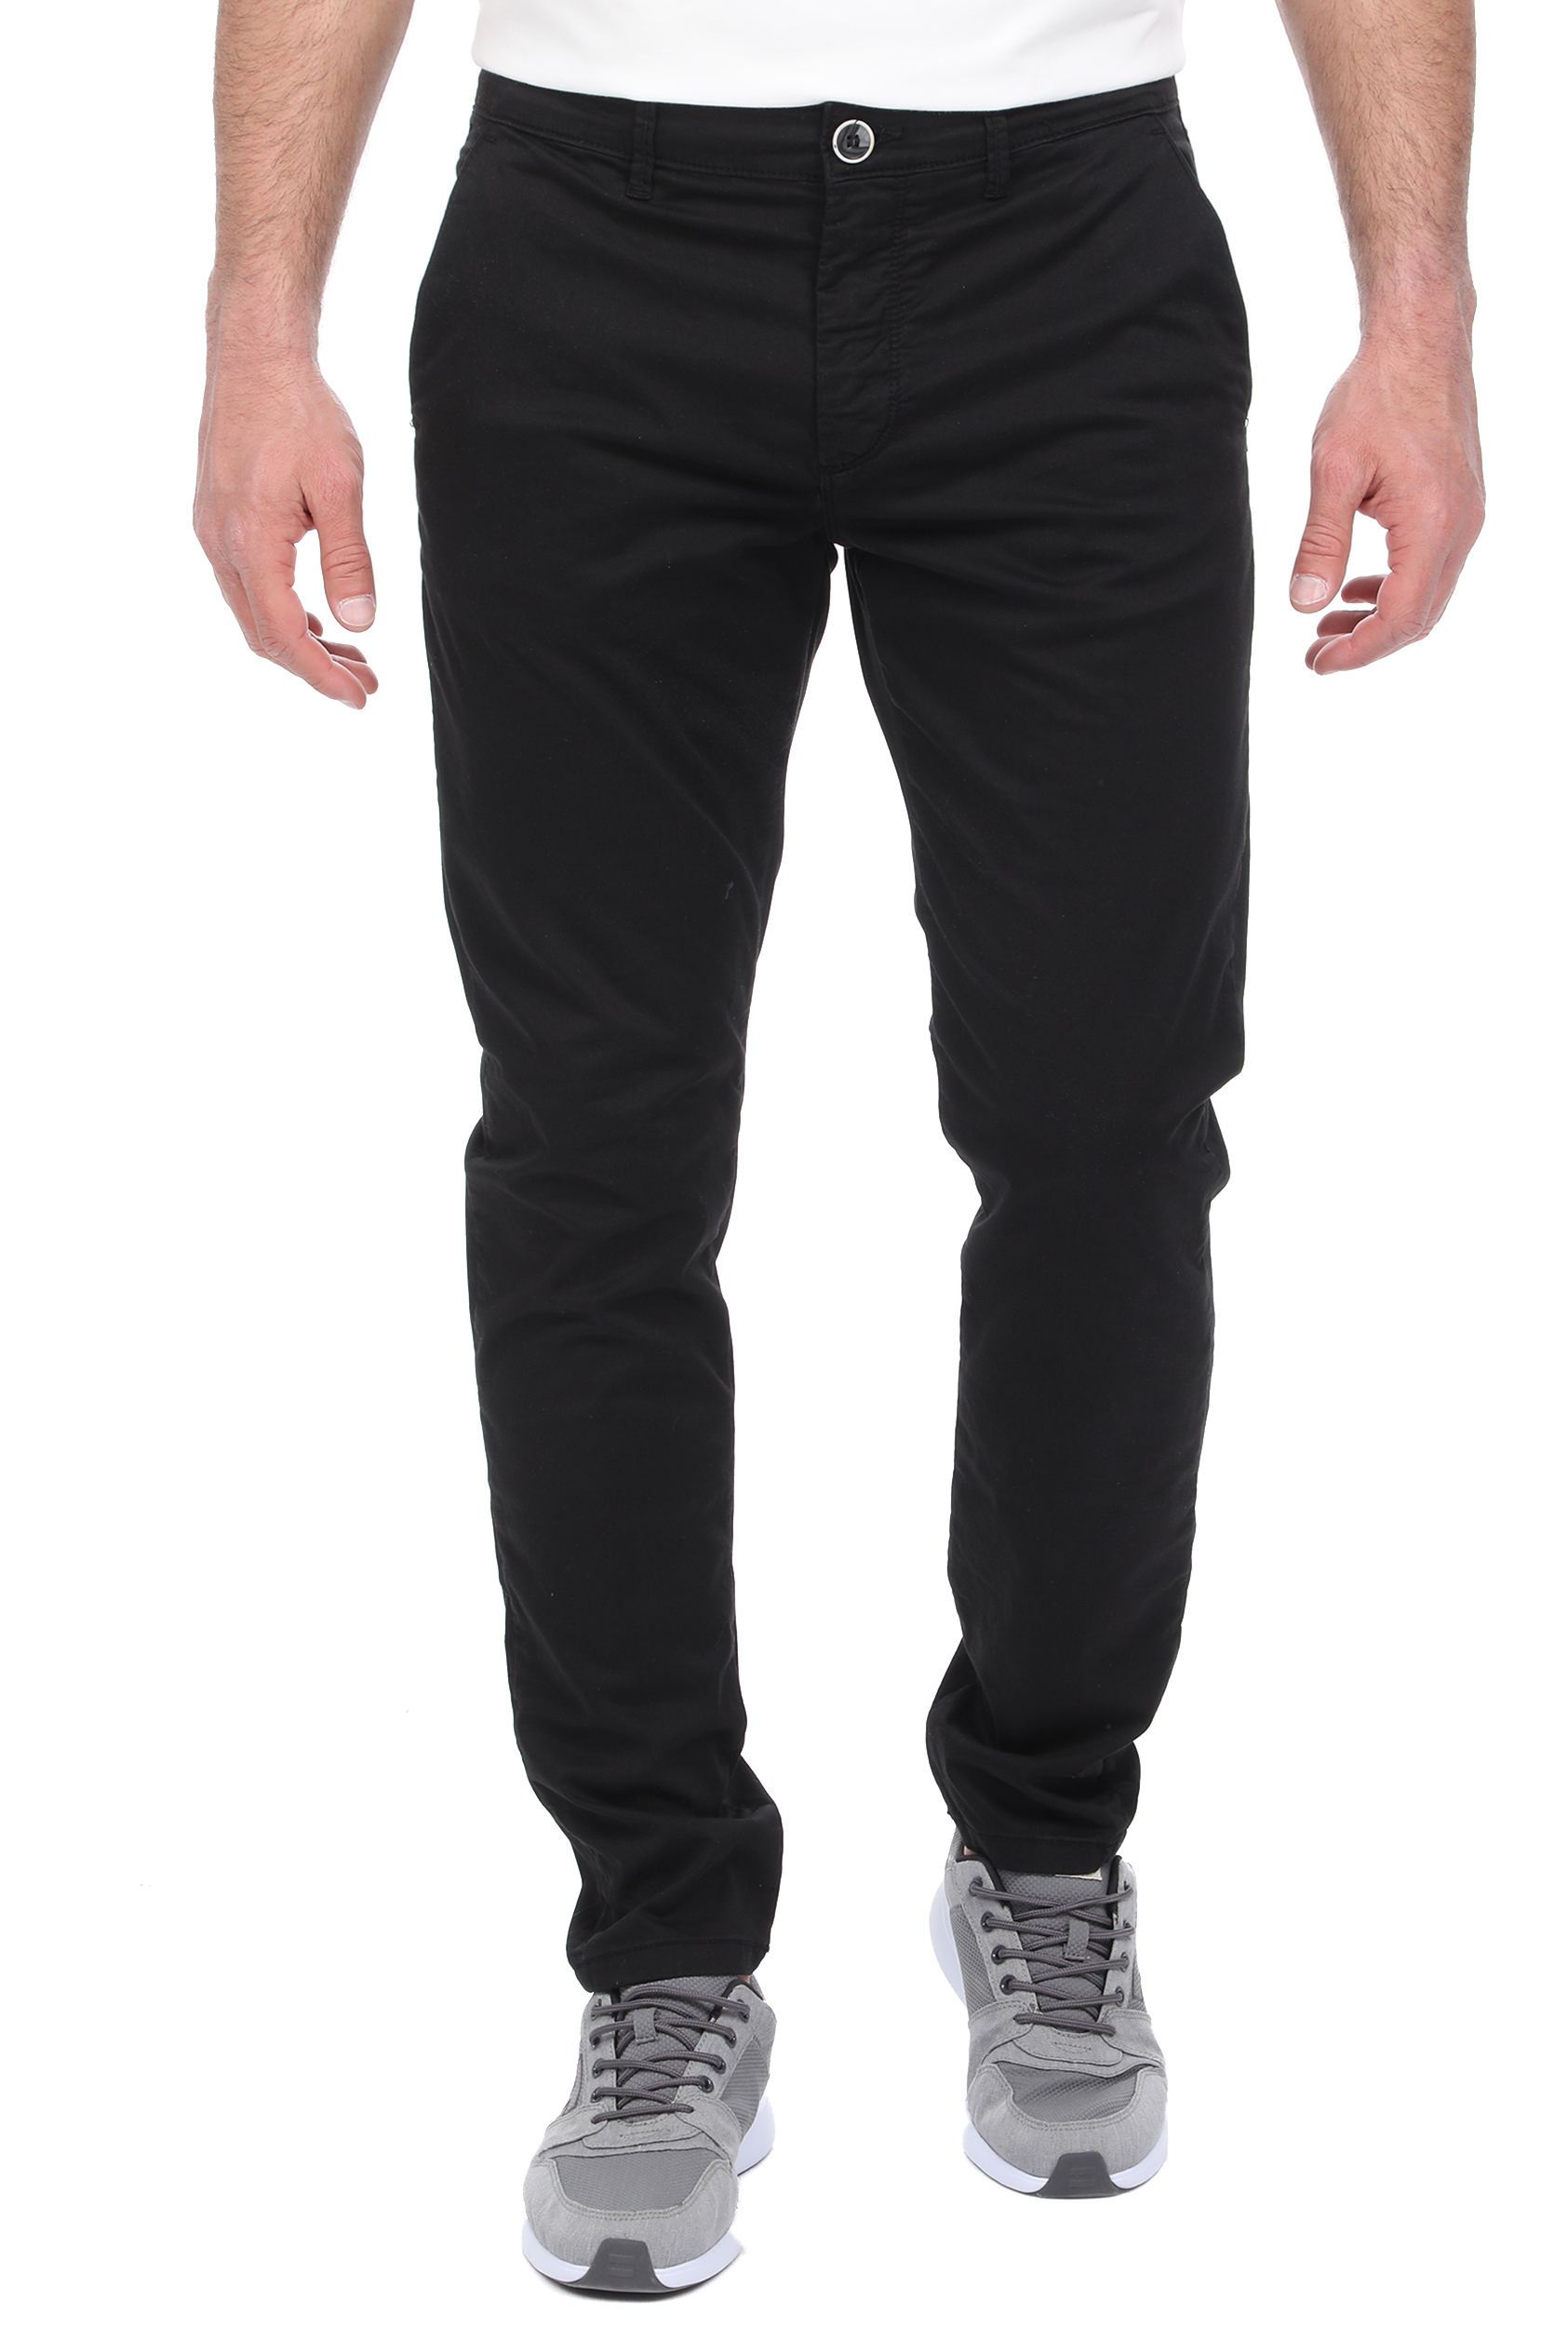 Ανδρικά/Ρούχα/Παντελόνια/Chinos SSEINSE - Ανδρικό παντελόνι chino SSEINSE μαύρο